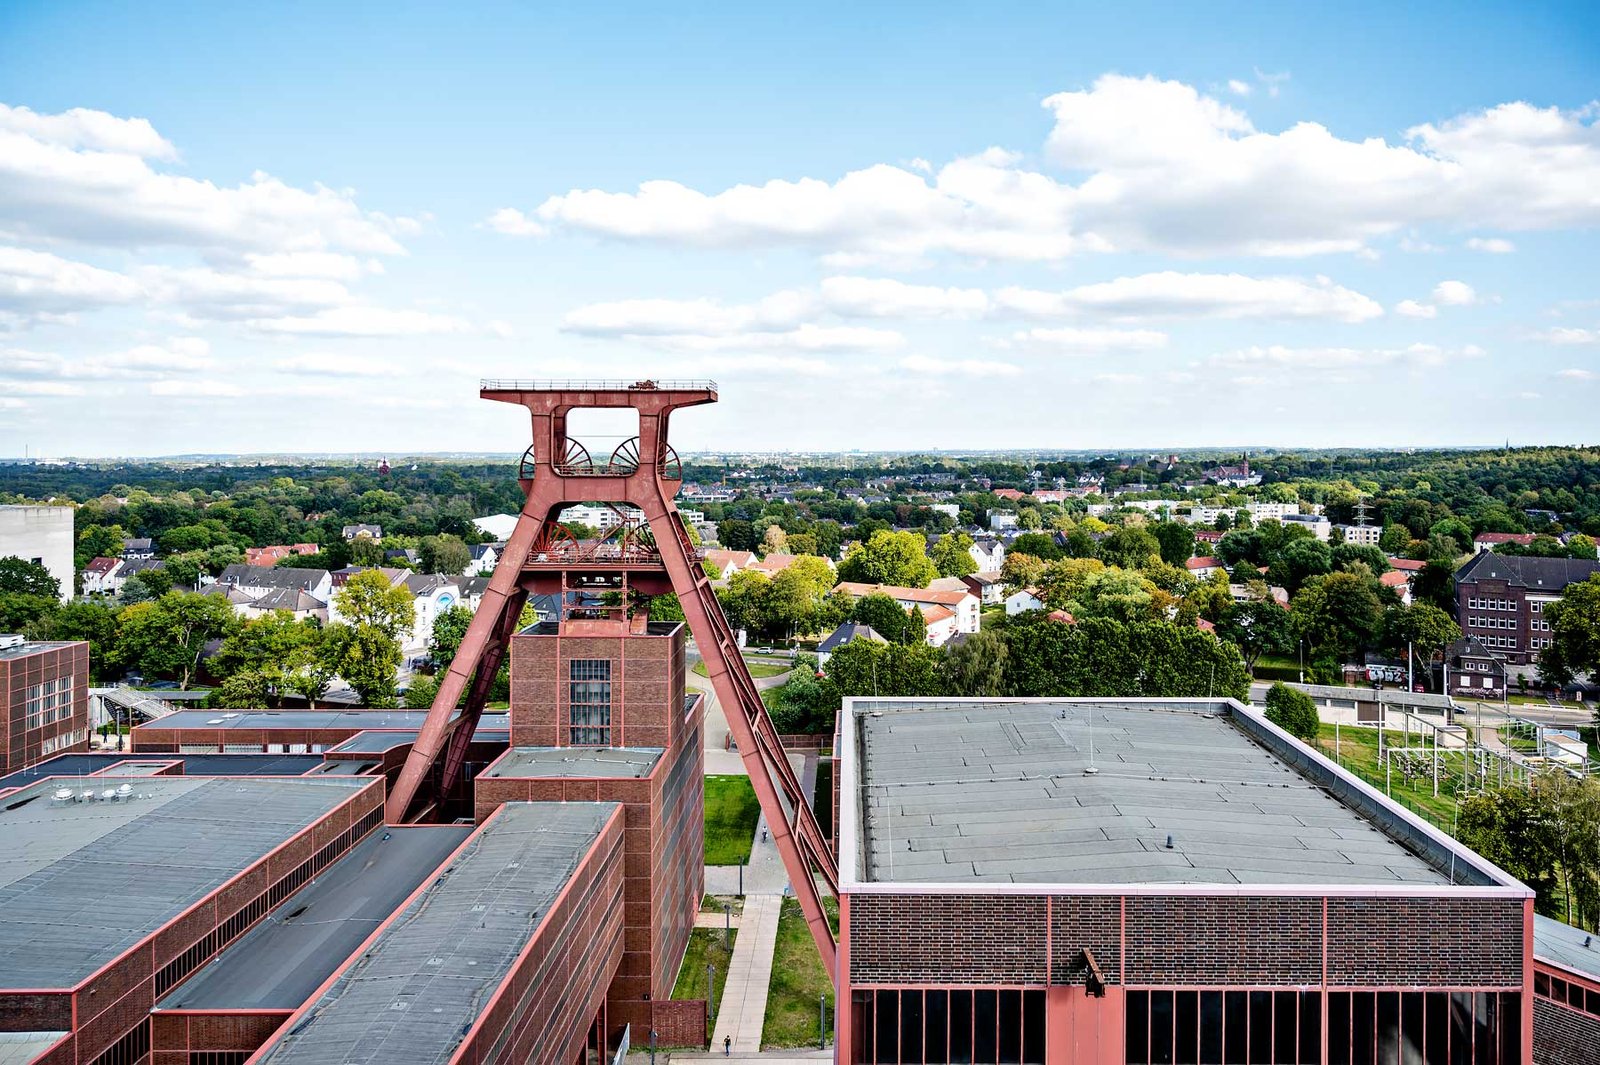 Industriecomplex Unesco Werelderfgoed Zollverein in Essen, Duitsland. Een van de interessantste plaatsen om te bezoeken in het Ruhrgebied.